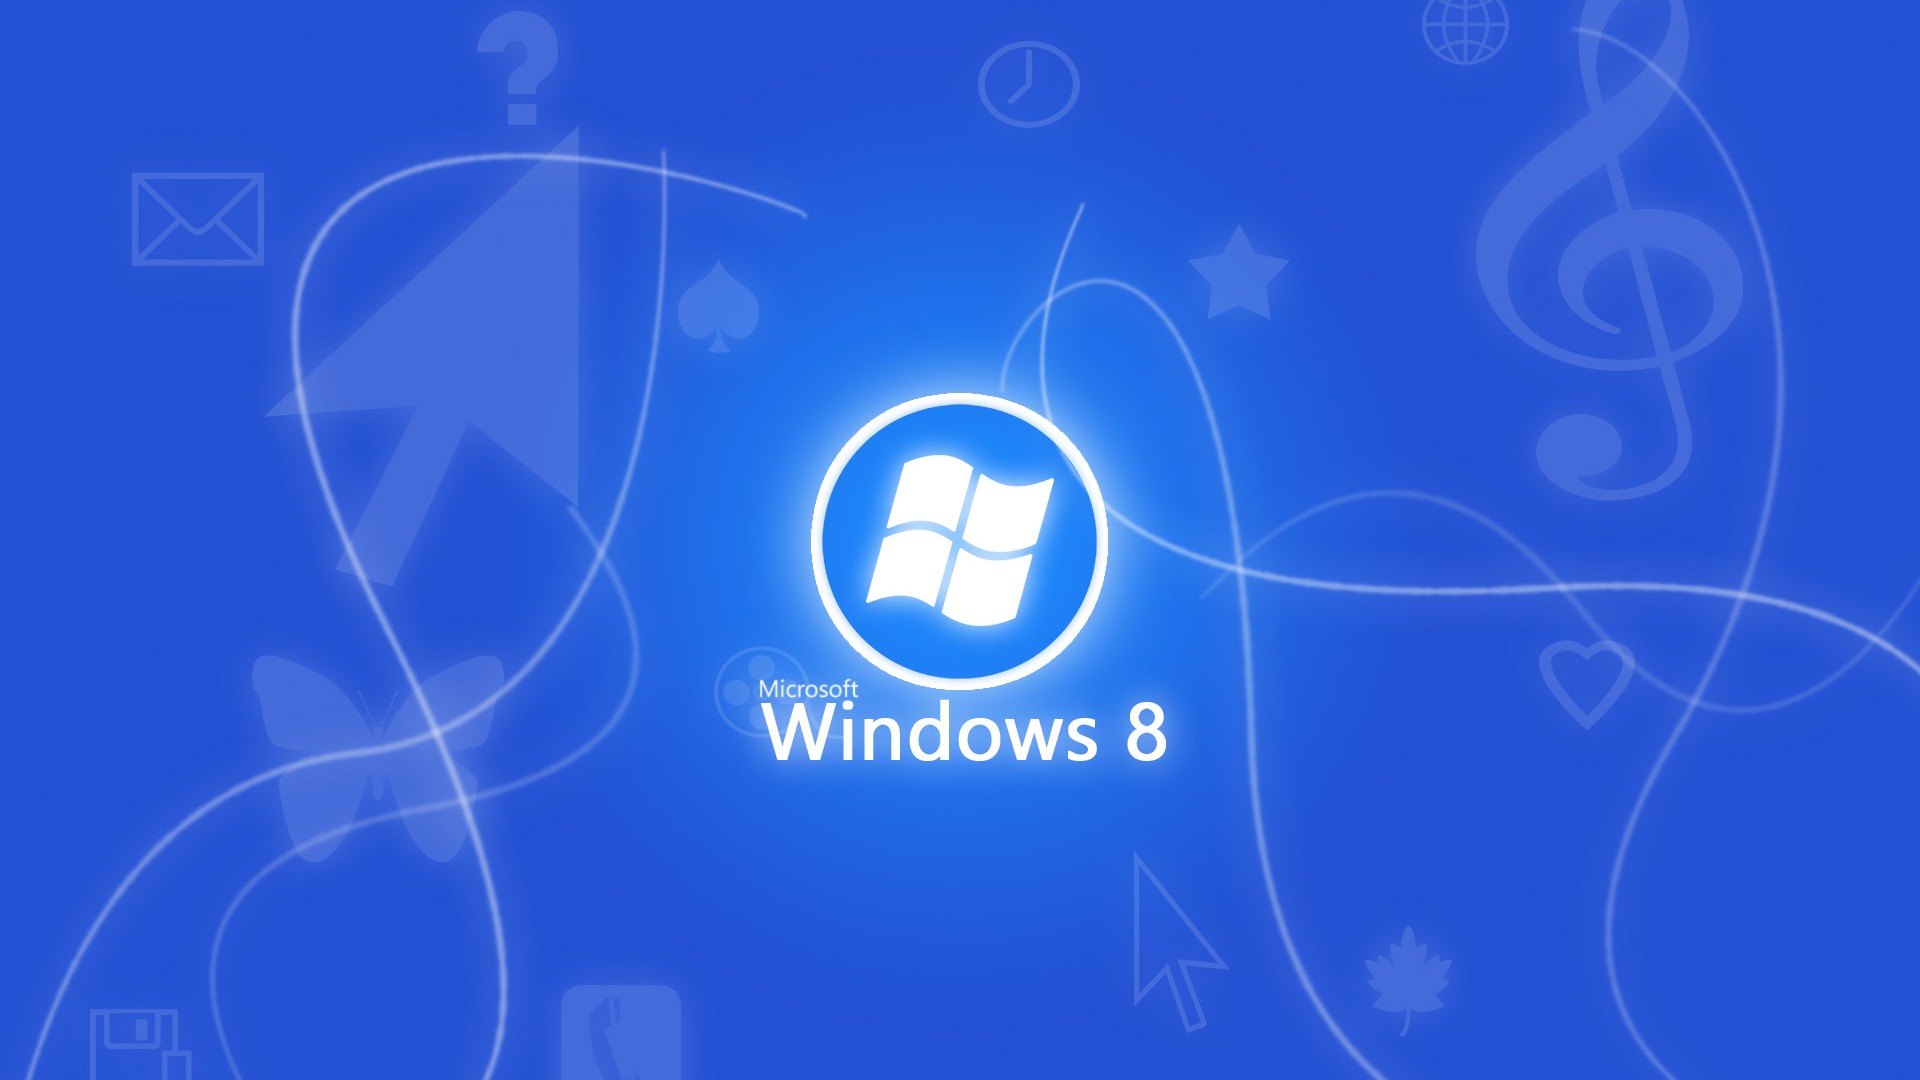 Windows 8 Theme Wallpaper (2) #6 - 1920x1080